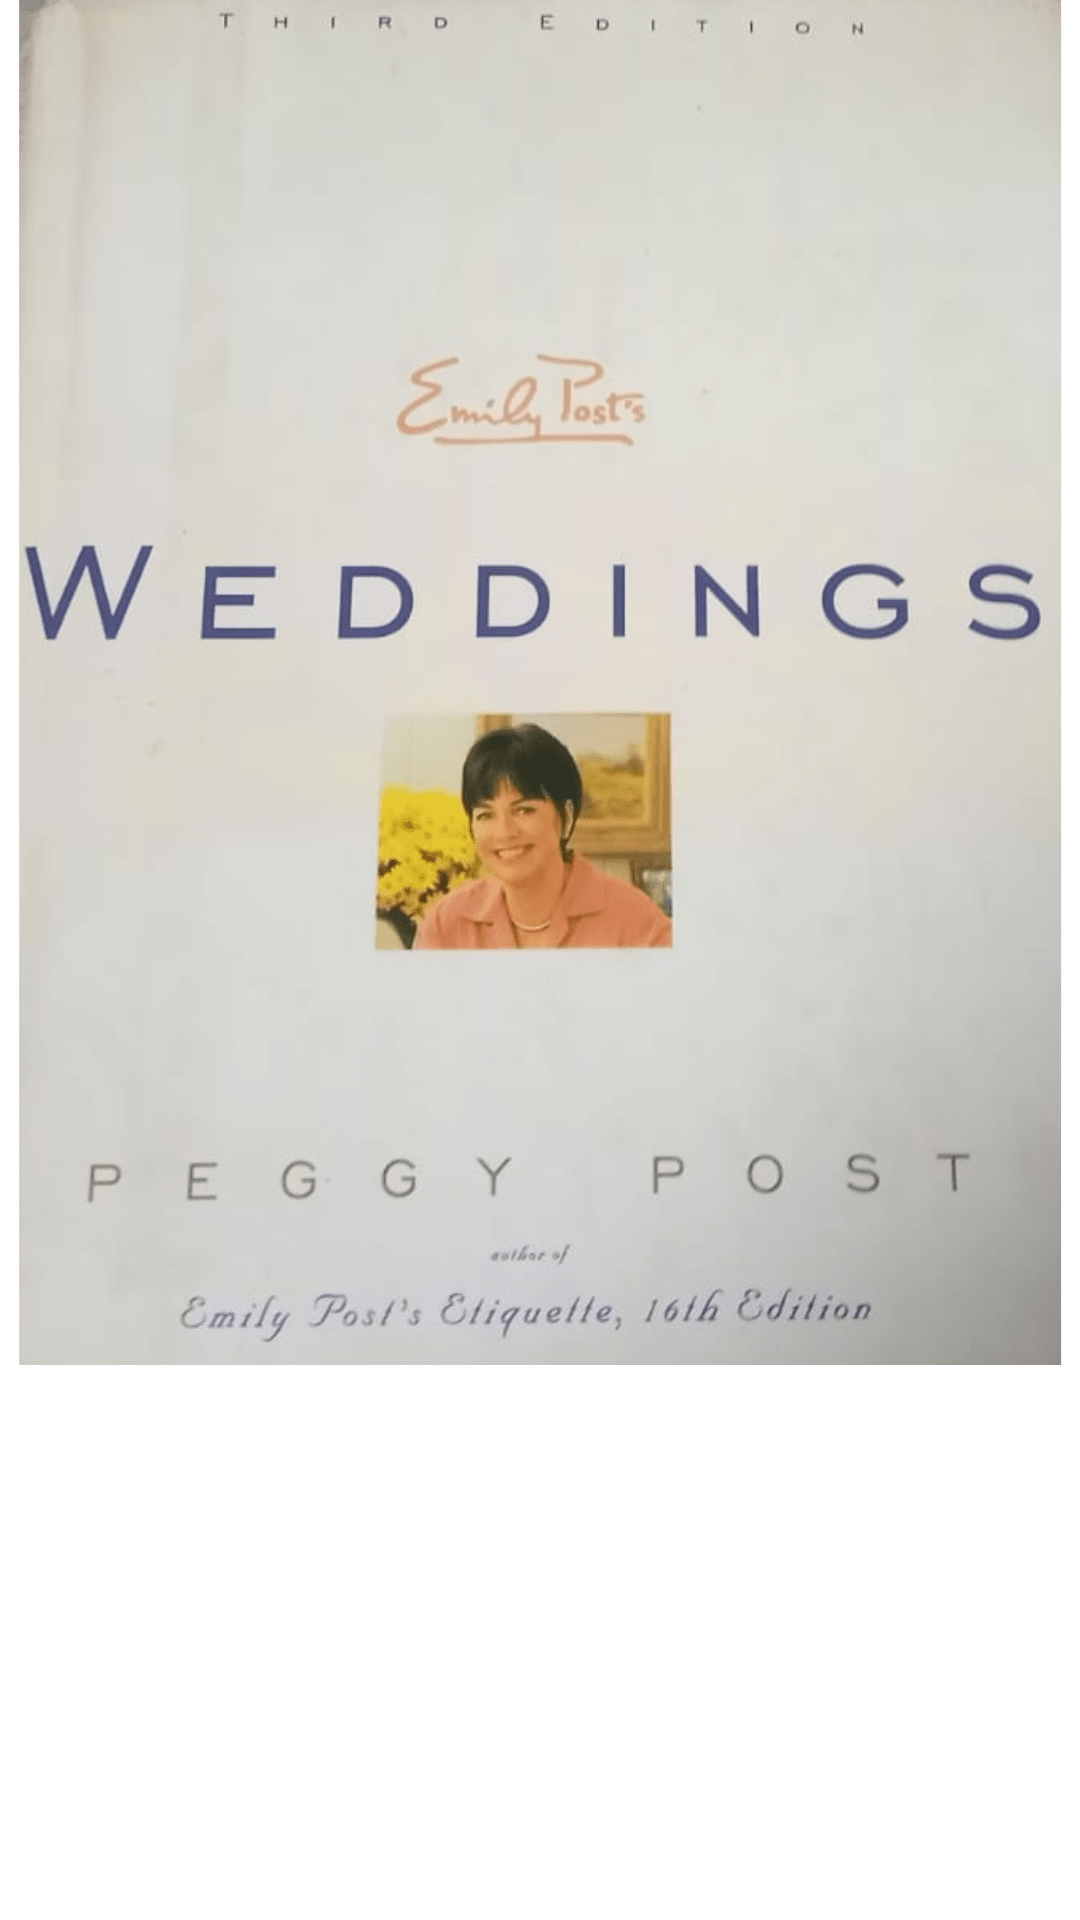 Emily Post's Weddings